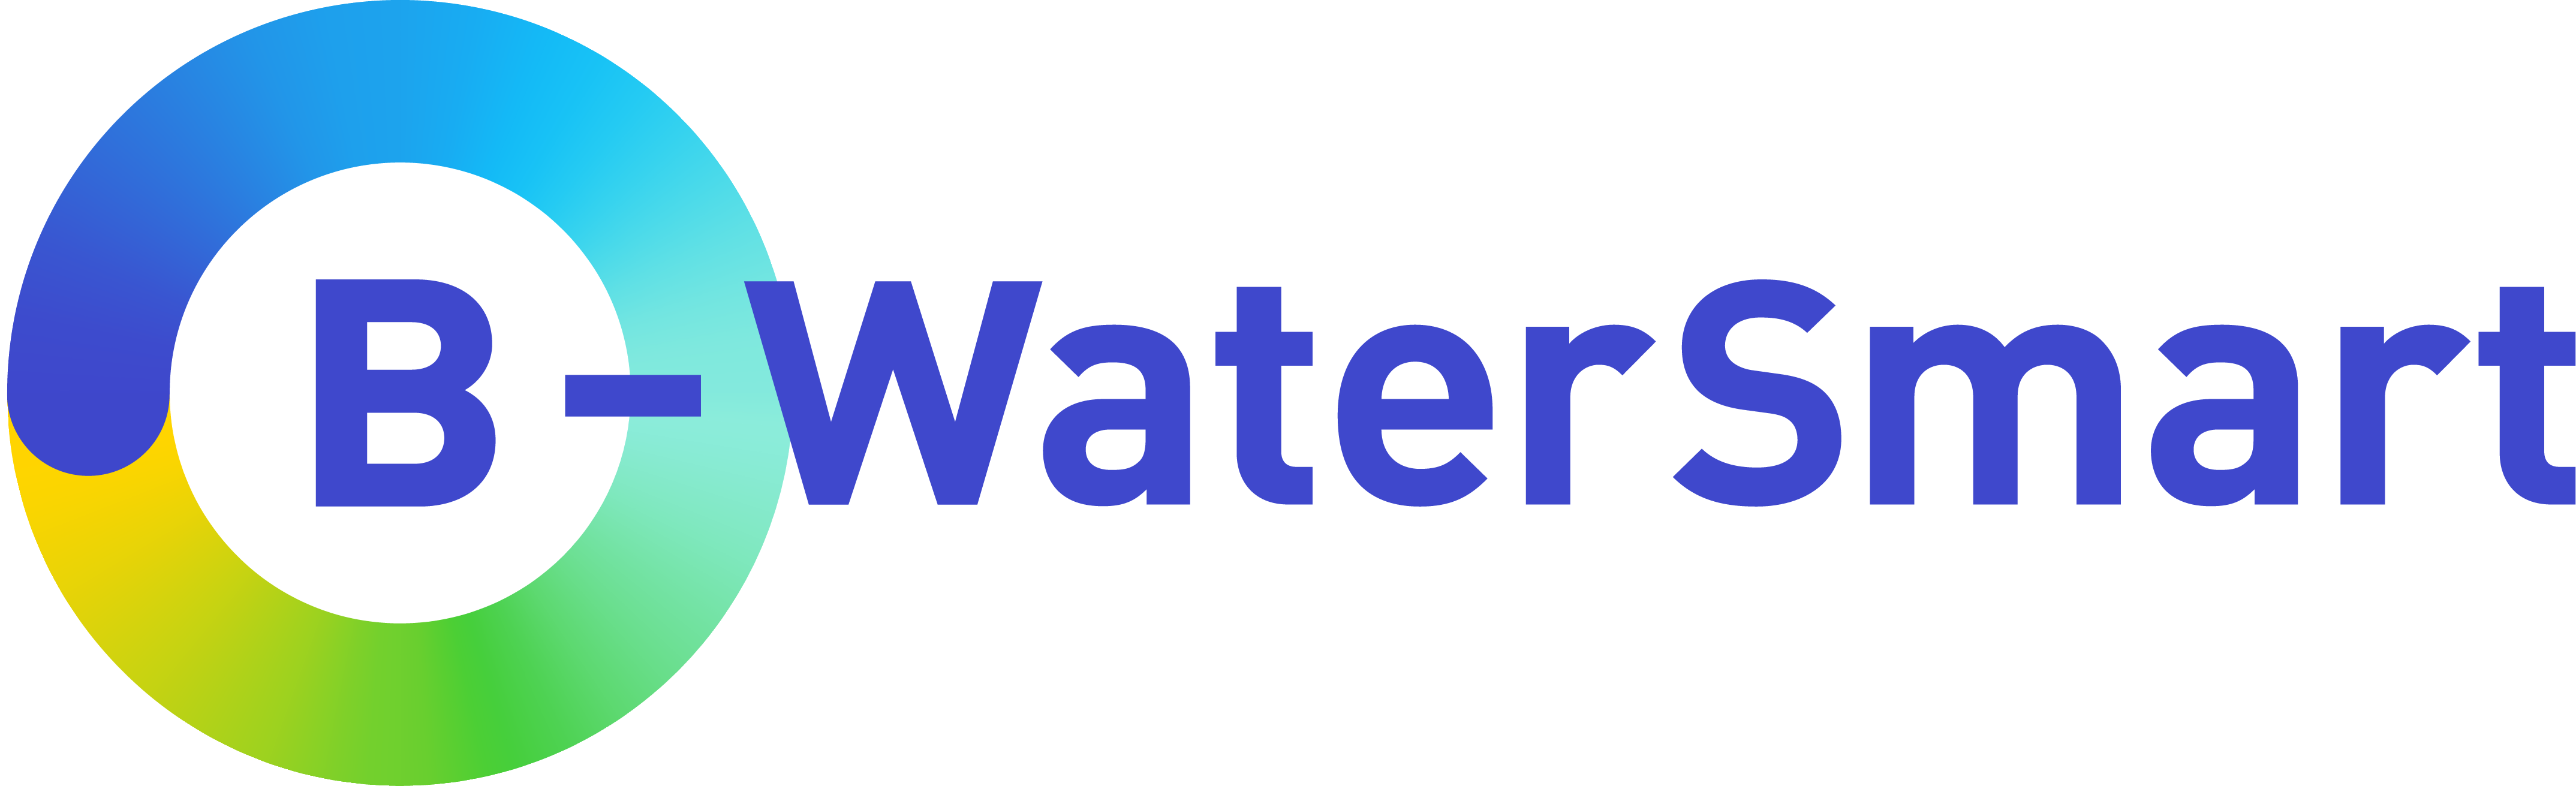 Project B-WaterSmart